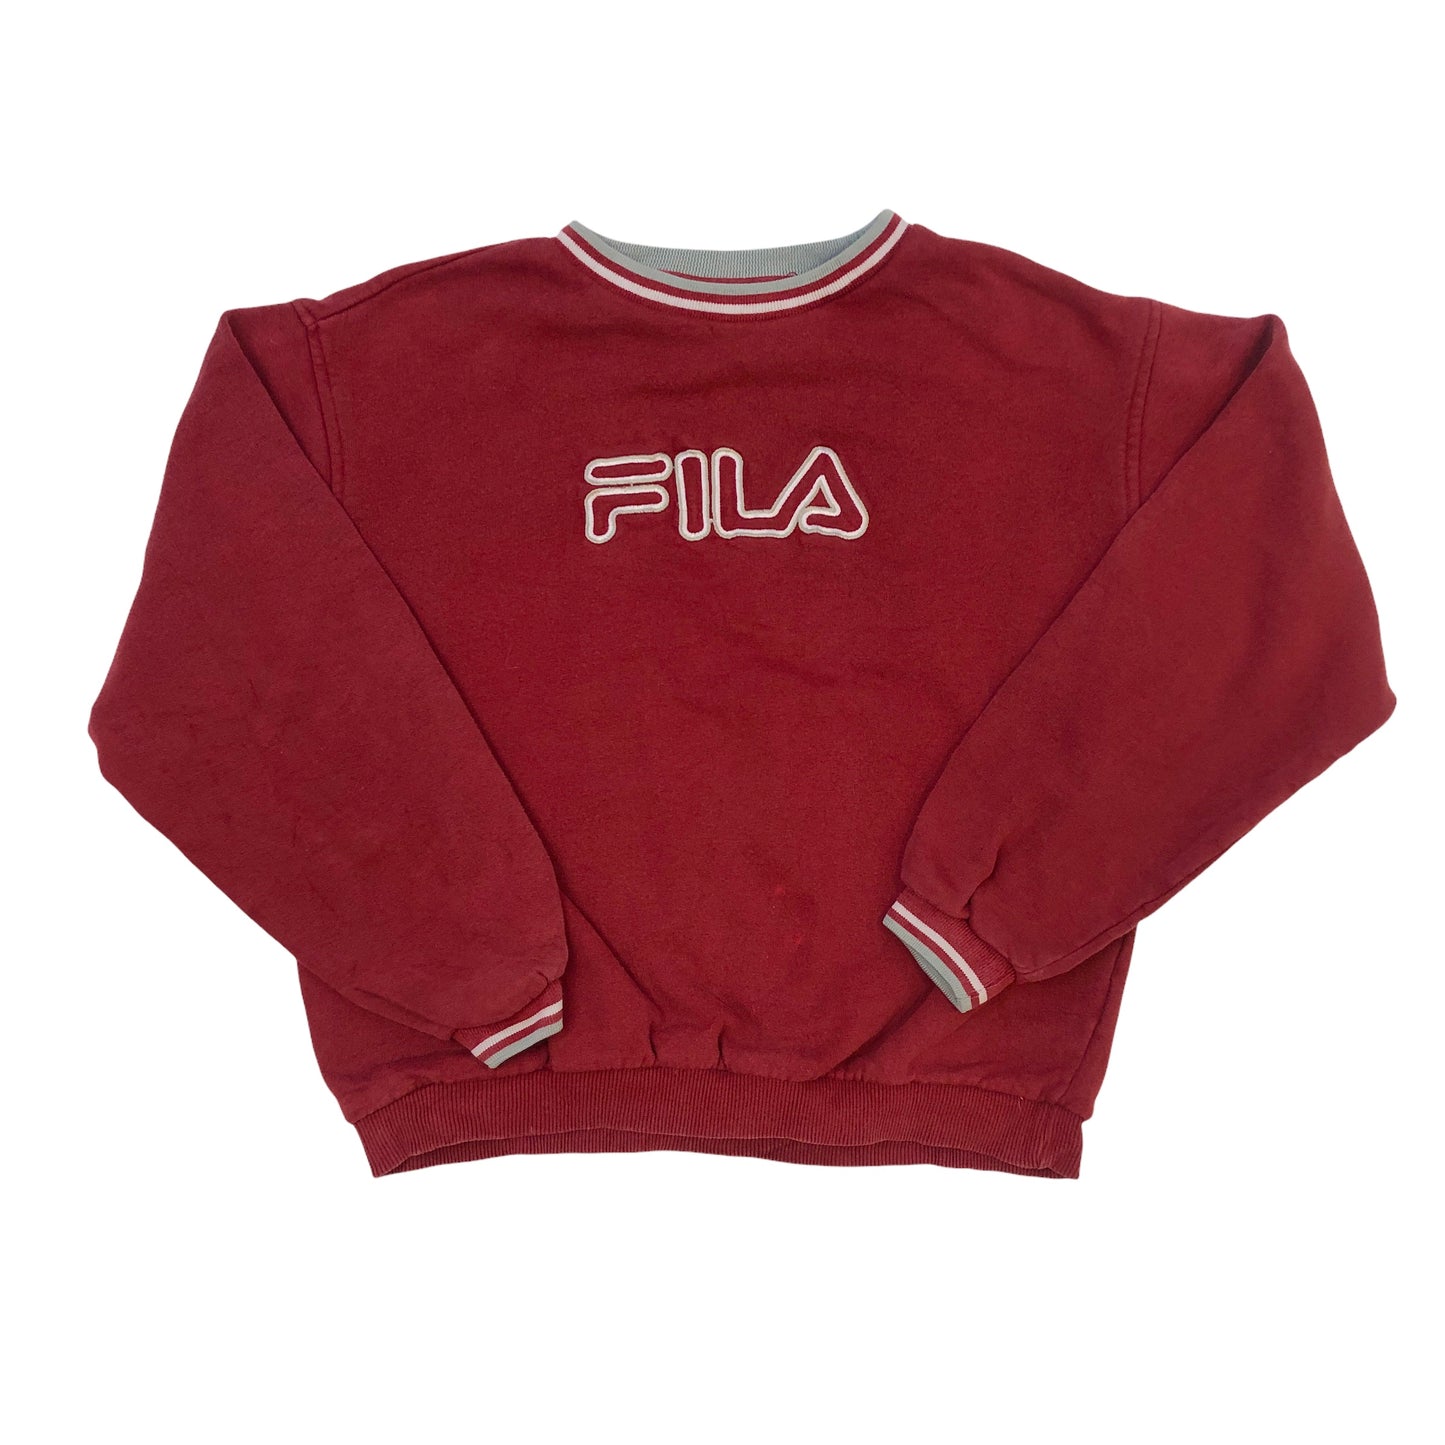 Vintage 90's Fila Sweatshirt (Age 10-12)